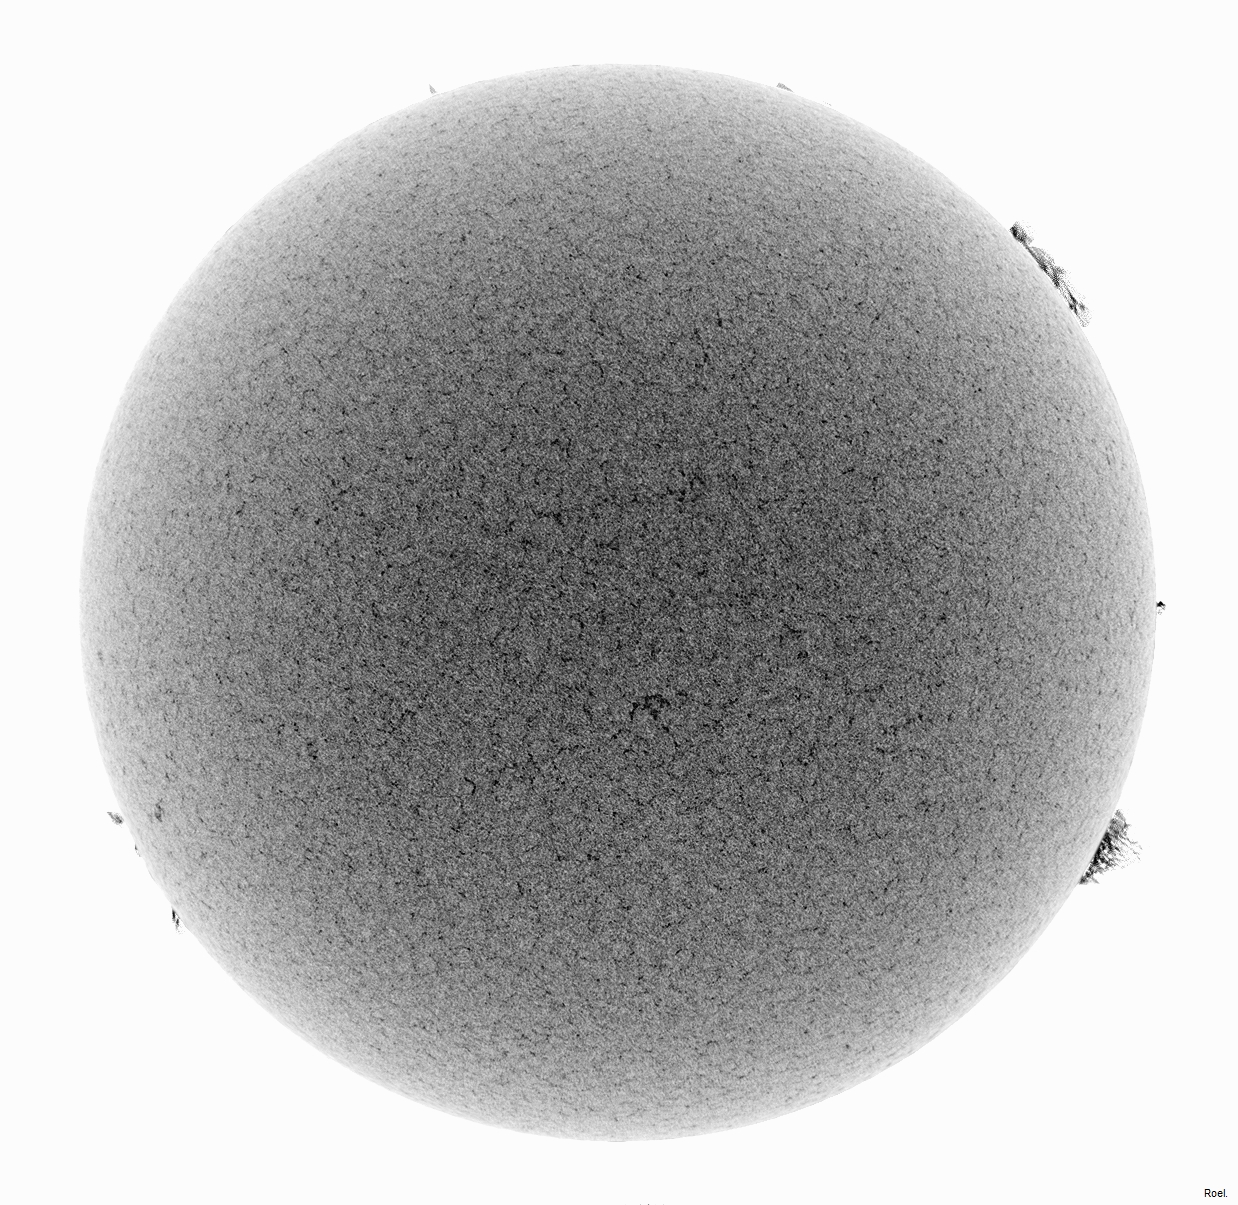 Sol del 10 de octubre del 2018-Meade-CaK-PSTmod-1neg.jpg